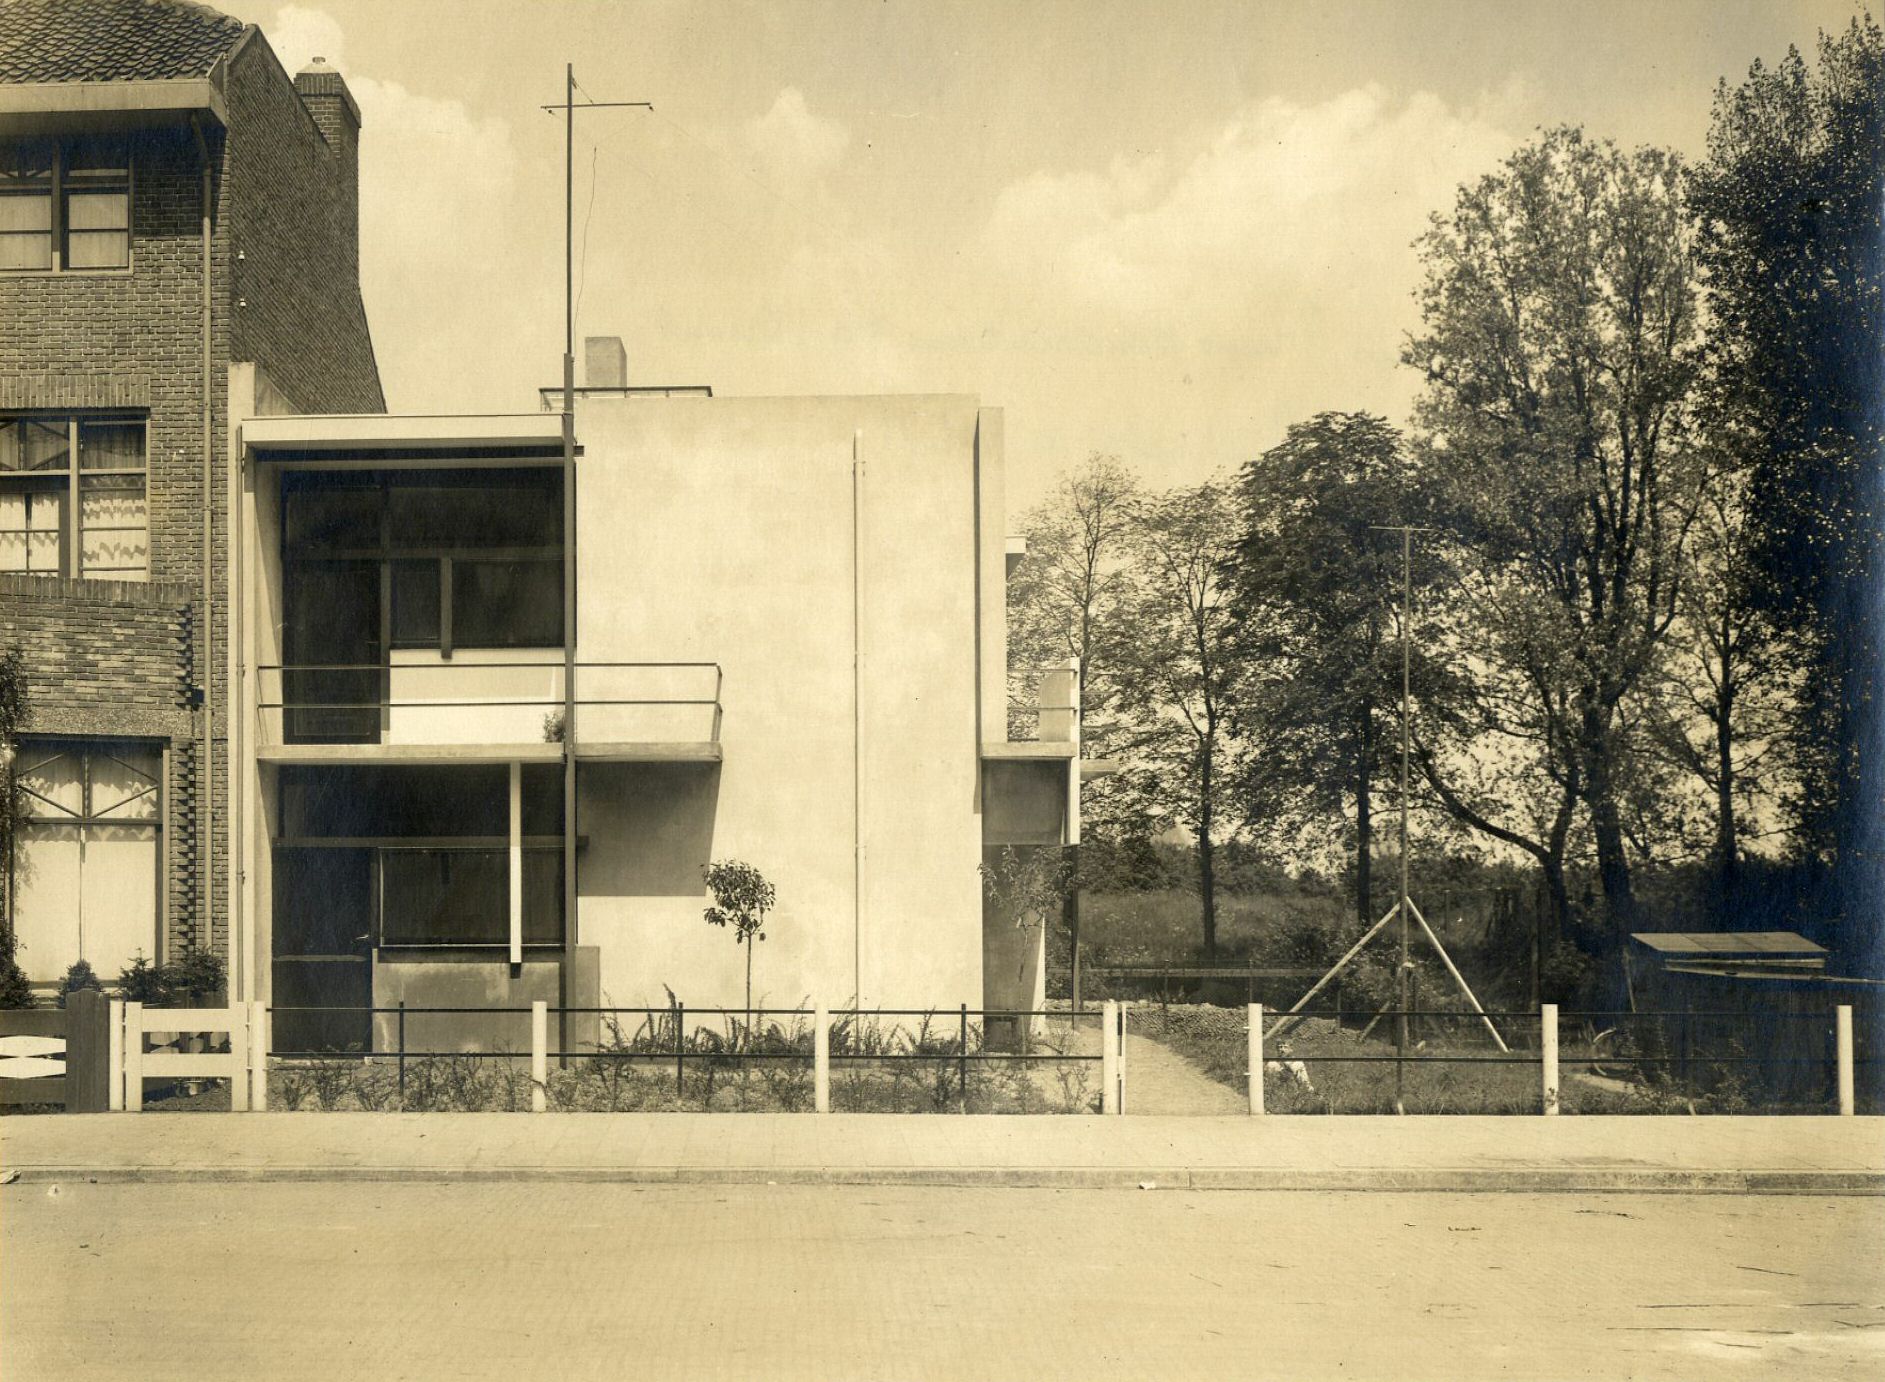 Rietveld Schrderhuis 1925 Het Utrechts Archief